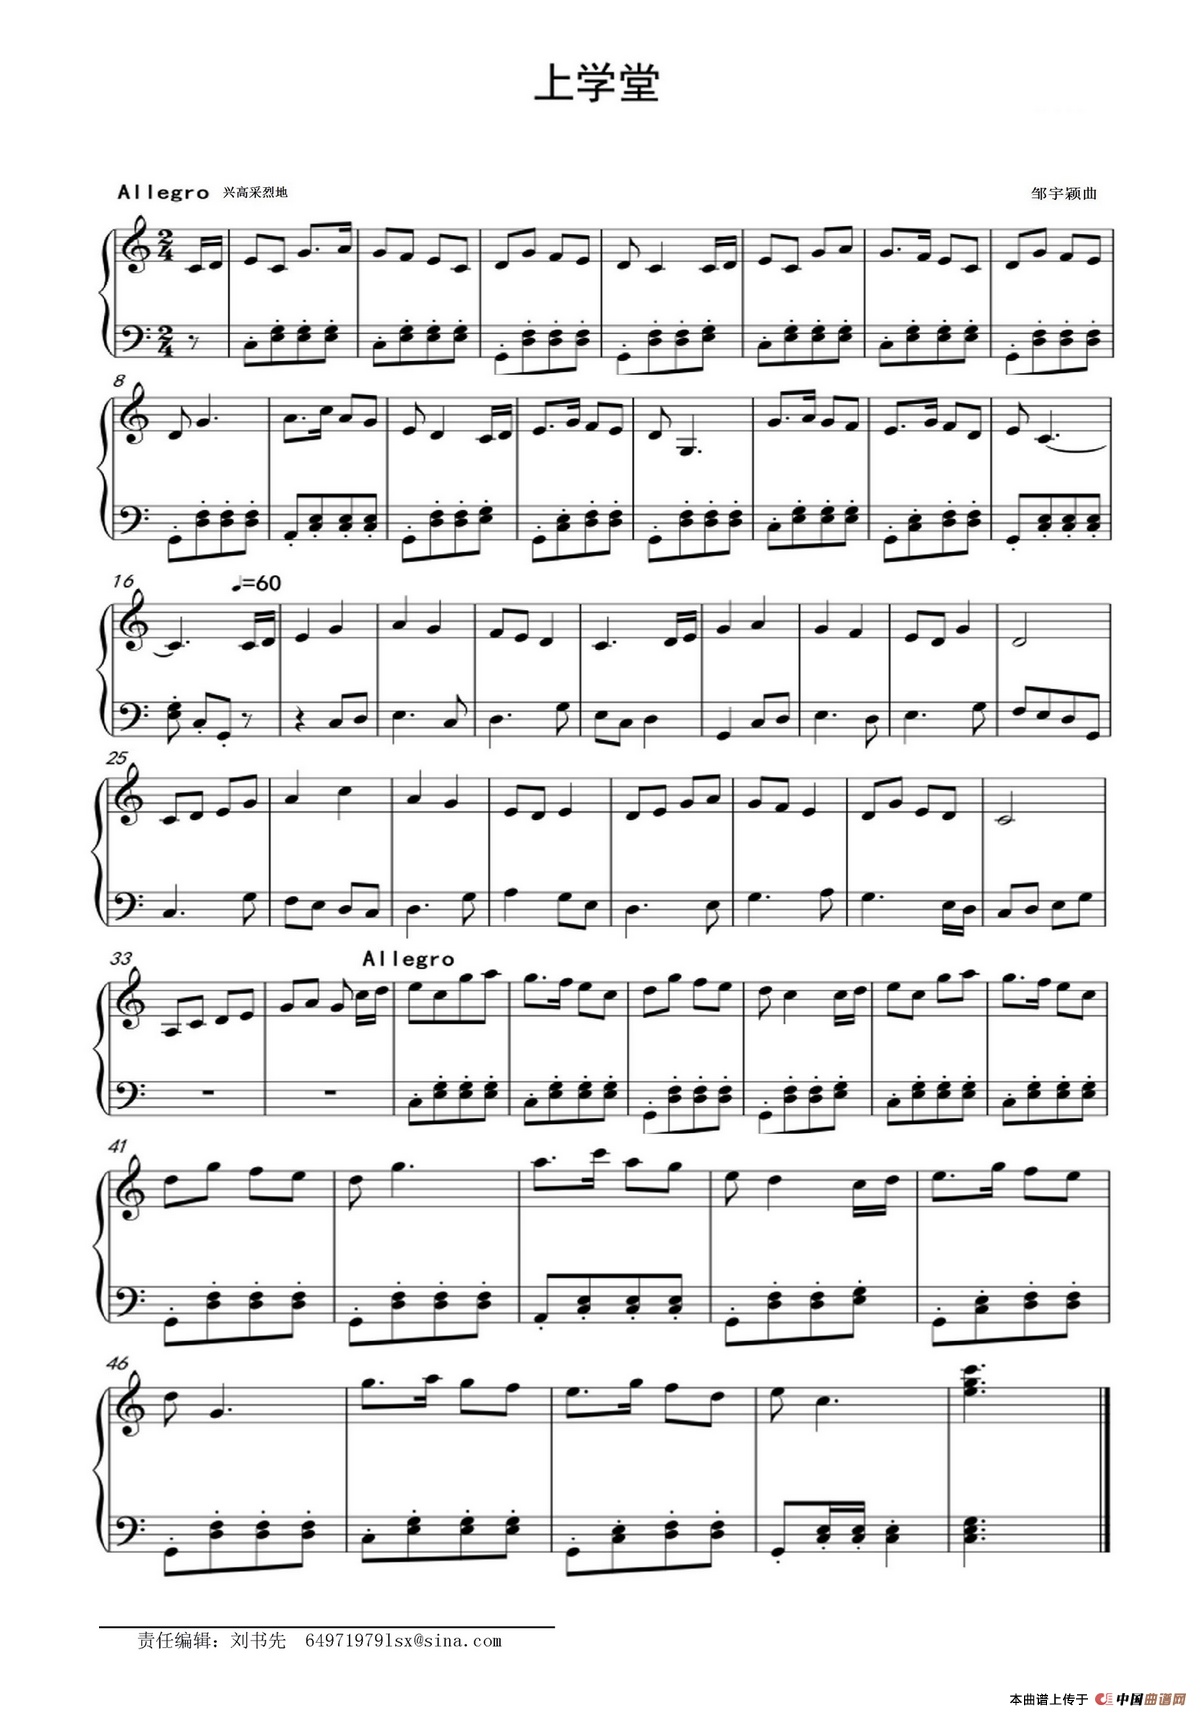 《上学堂》钢琴曲谱图分享